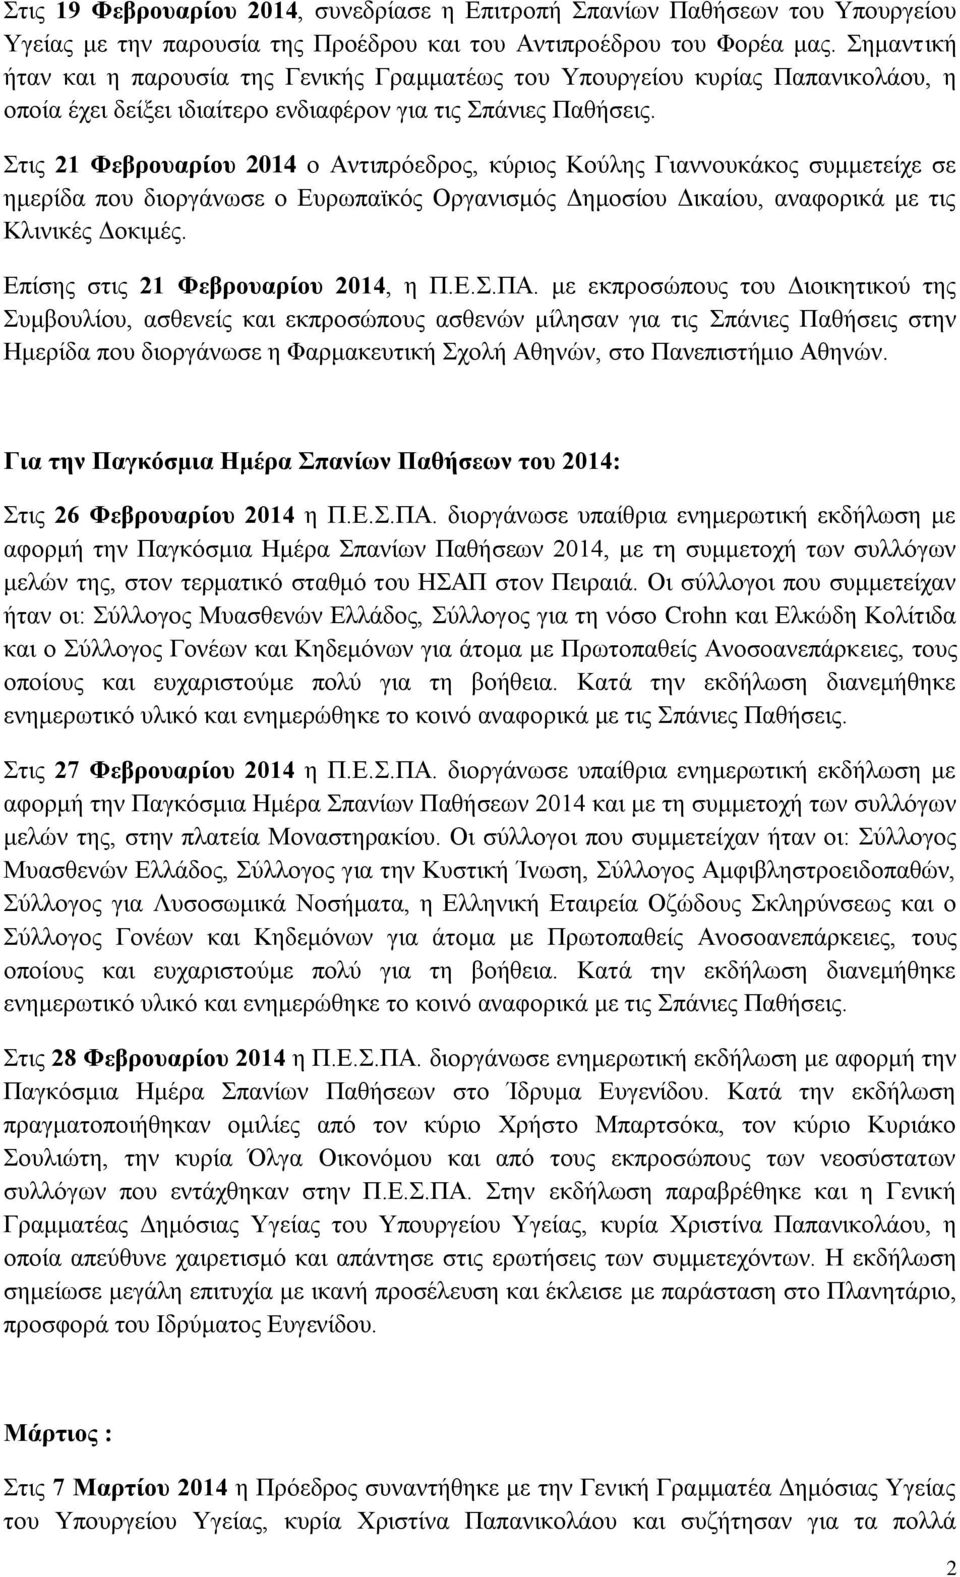 Στις 21 Φεβρουαρίου 2014 ο Αντιπρόεδρος, κύριος Κούλης Γιαννουκάκος συμμετείχε σε ημερίδα που διοργάνωσε ο Ευρωπαϊκός Οργανισμός Δημοσίου Δικαίου, αναφορικά με τις Κλινικές Δοκιμές.